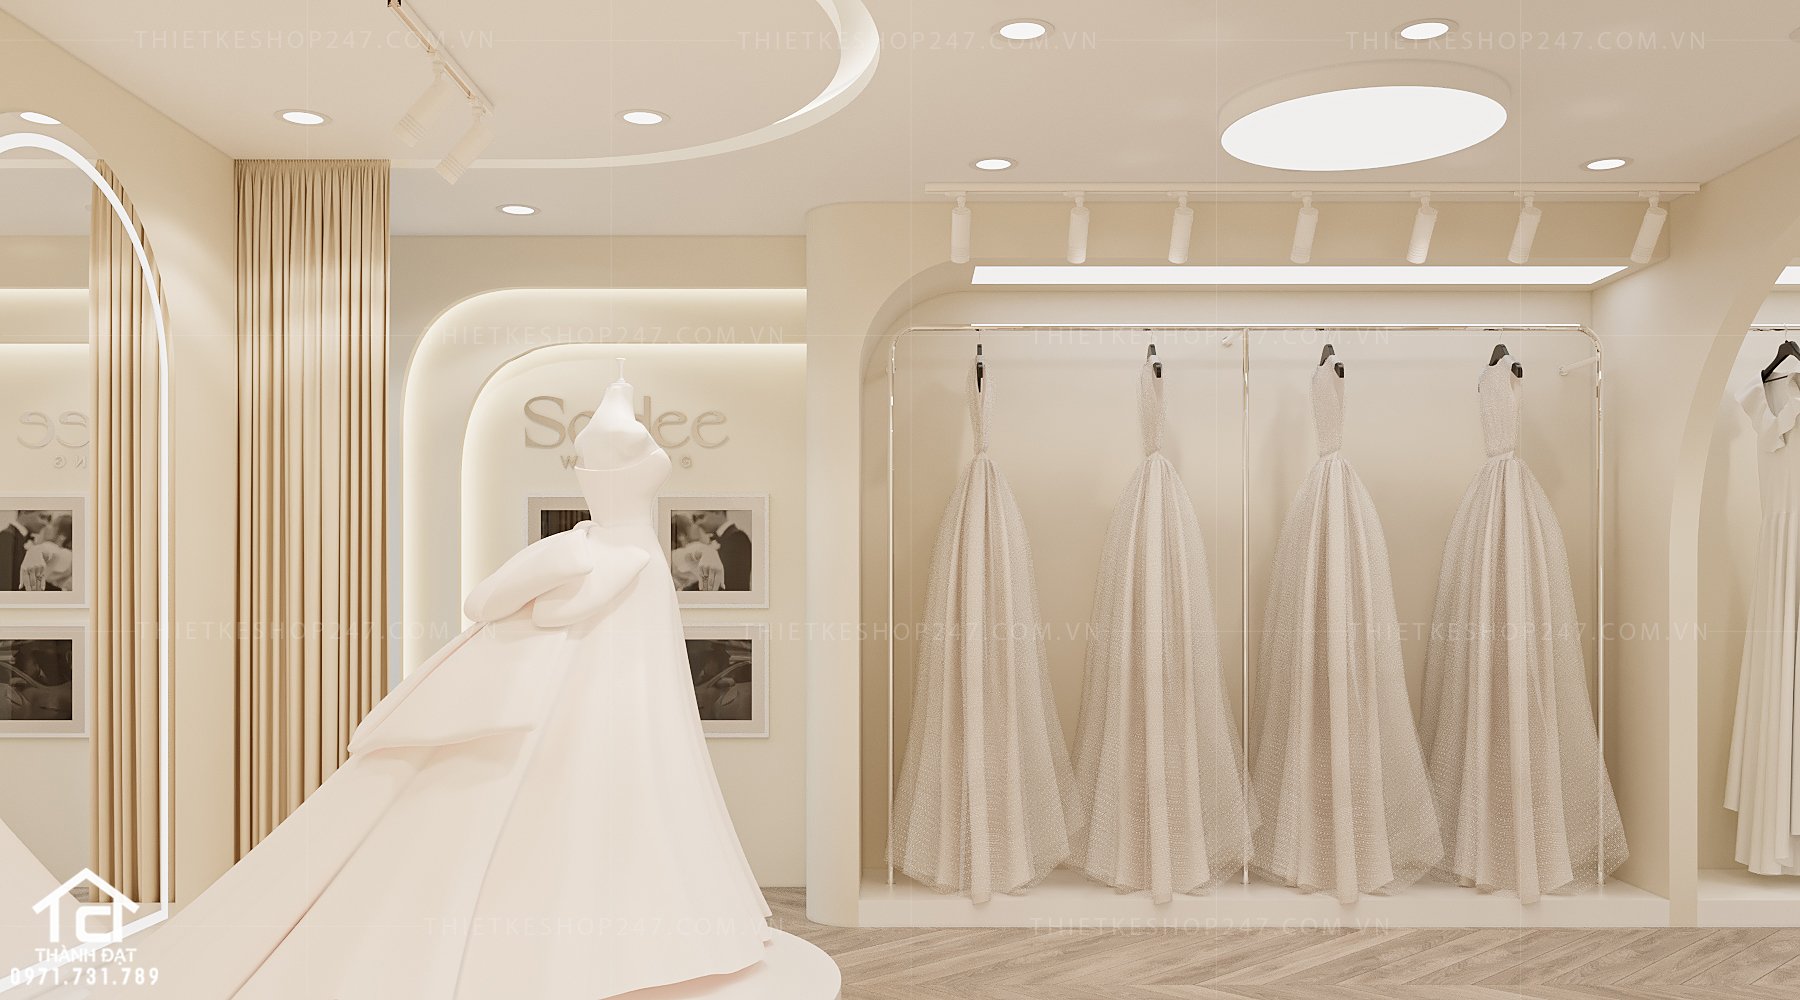 thiết kế studio áo cưới đẹp lôi cuốn